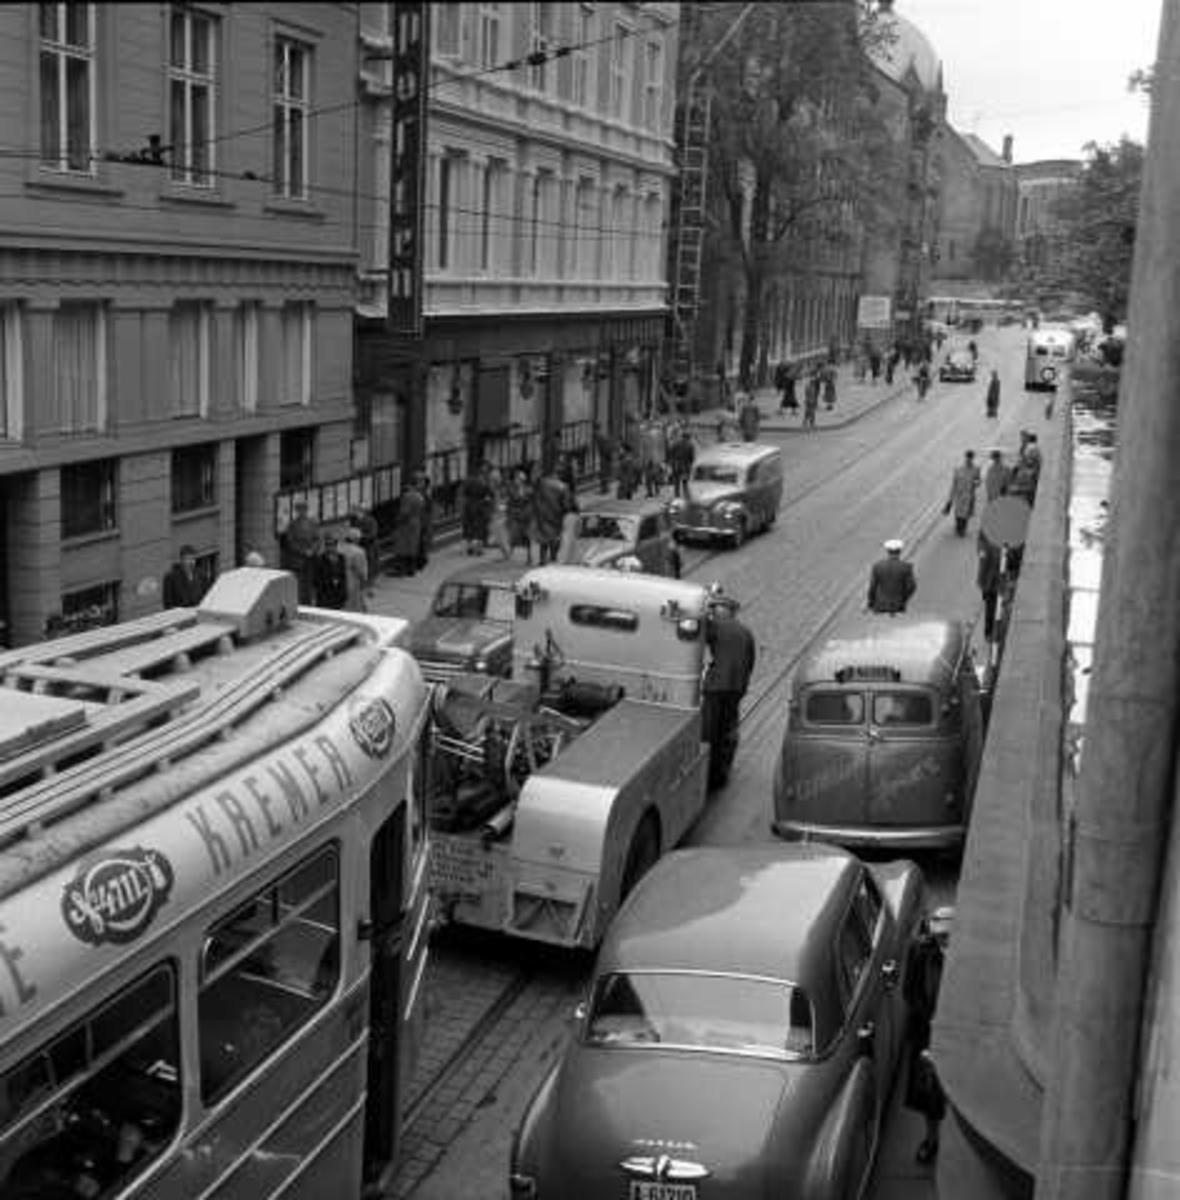 Oslo Sporveiers kranbil eller bergningsbil sleper en vogn av type MO (popuært kaldt "kylling") i Akersgata, Oslo 1956.